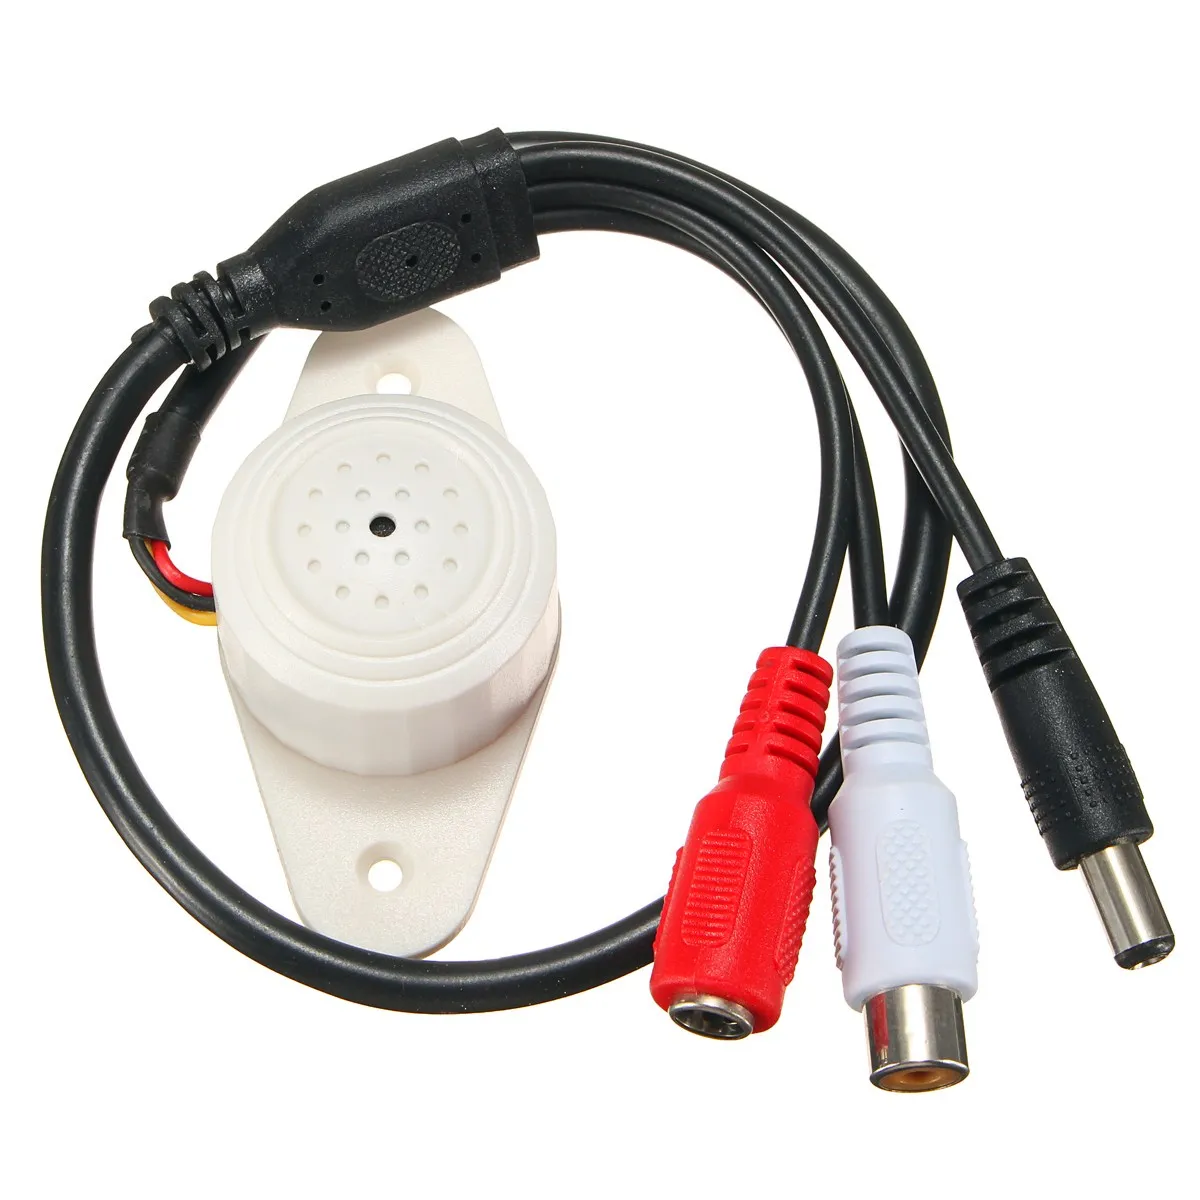 Safurance Professional звук водонепроницаемый микрофон для безопасности CCTV камера системы дома видеонаблюдения